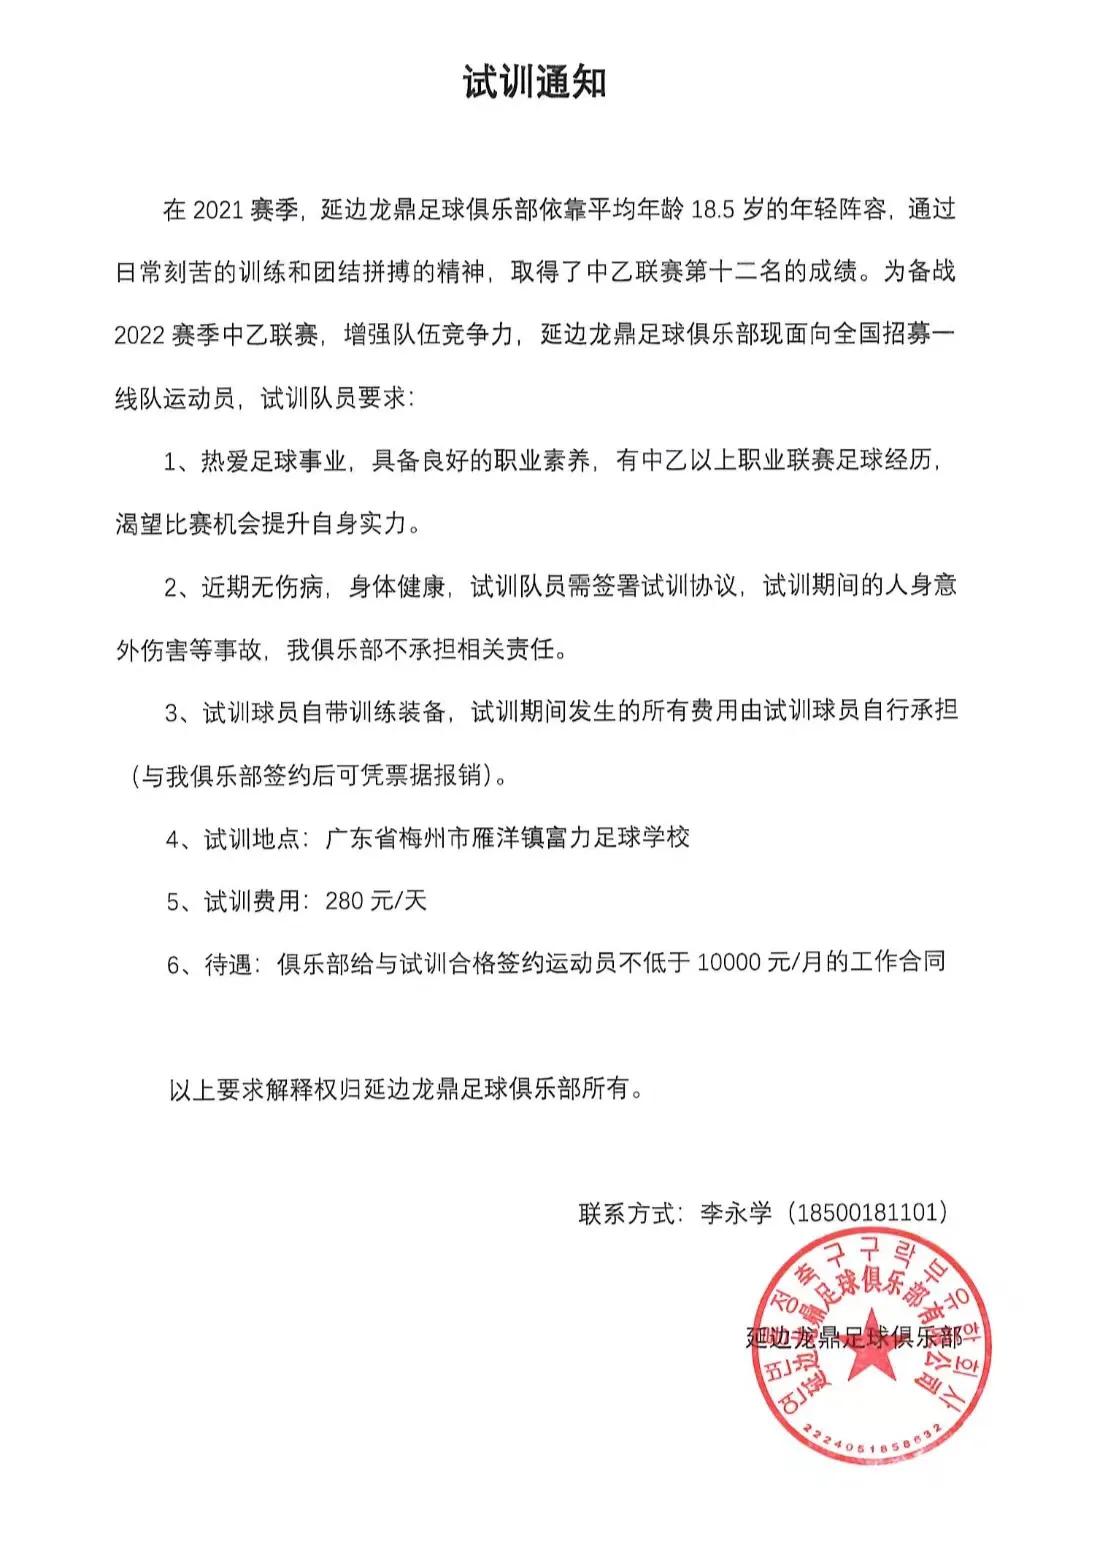 延边龙鼎足球俱乐部发布试训通知，面向全国招募一线球员